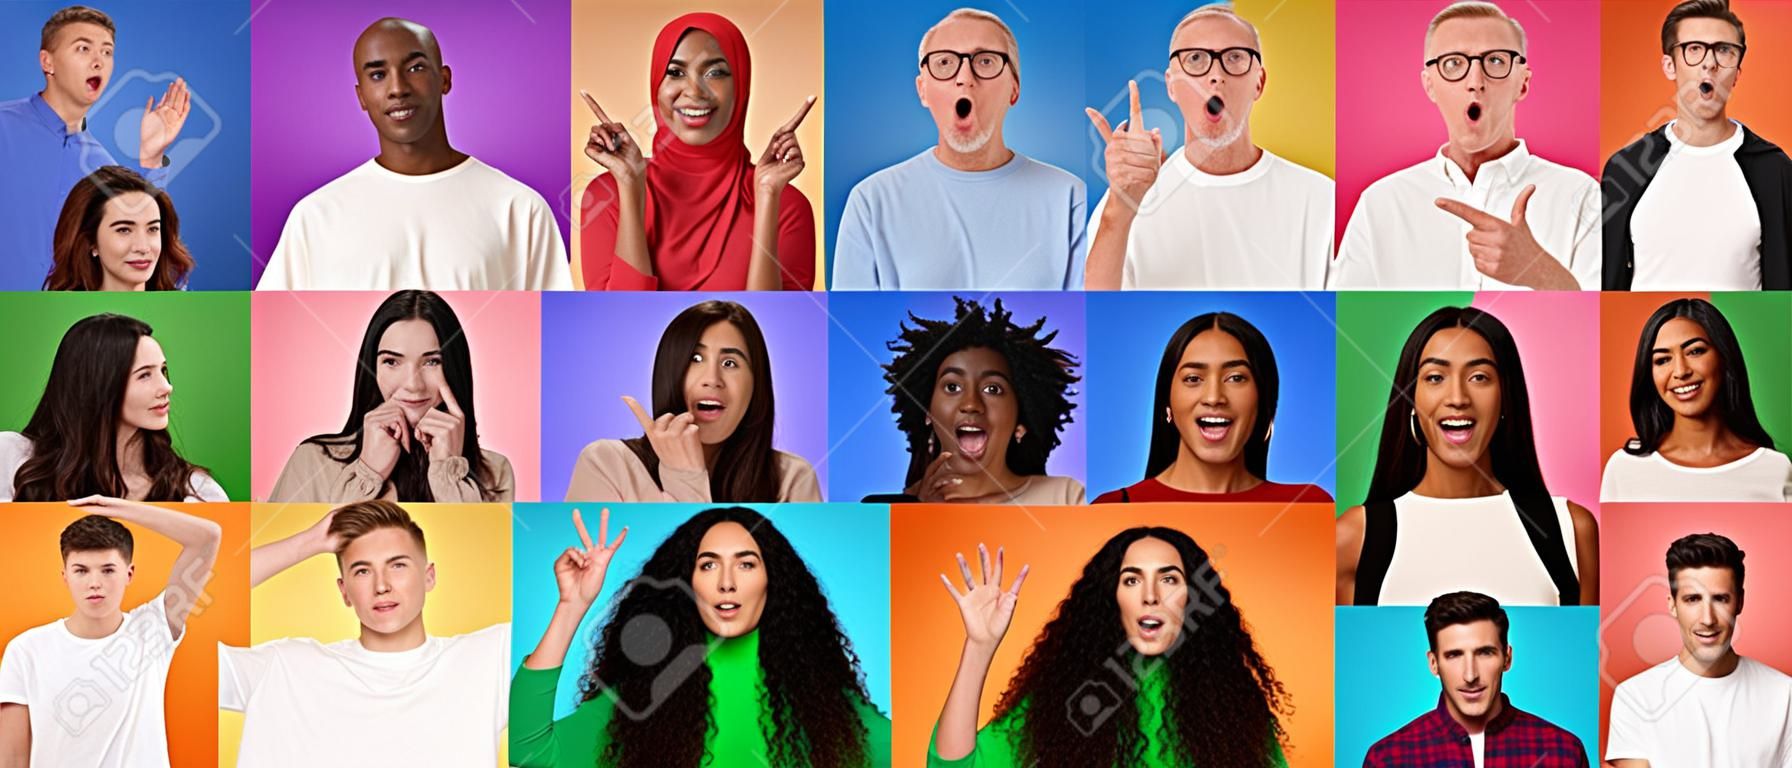 Des personnes d'âge et d'origine ethnique différentes exprimant diverses émotions sur des arrière-plans colorés